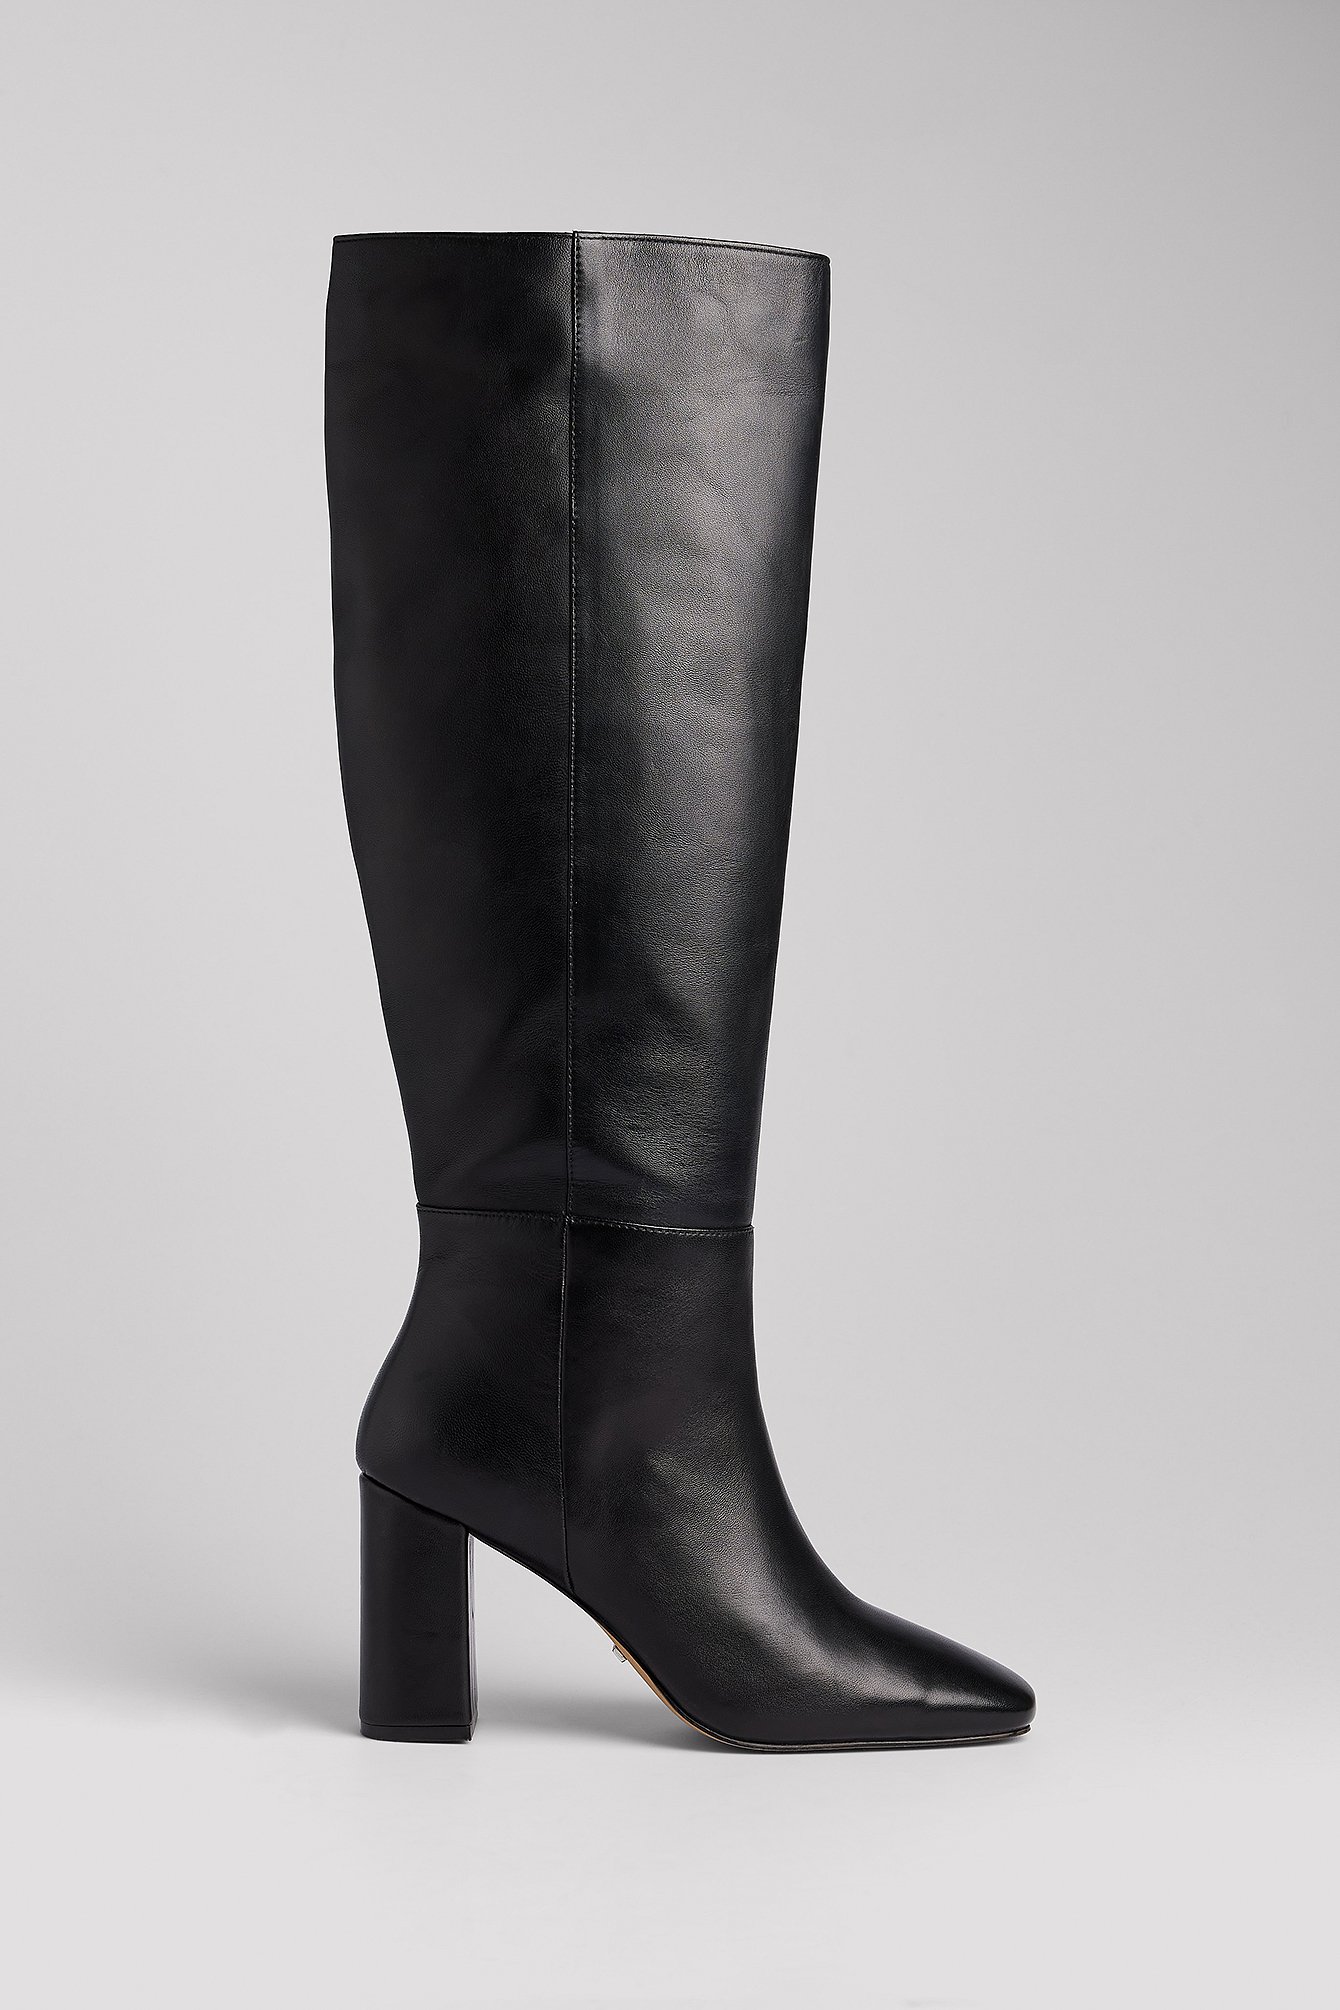 Catya Faux Leather Knee High Billini Boots (Bone) - Wishupon